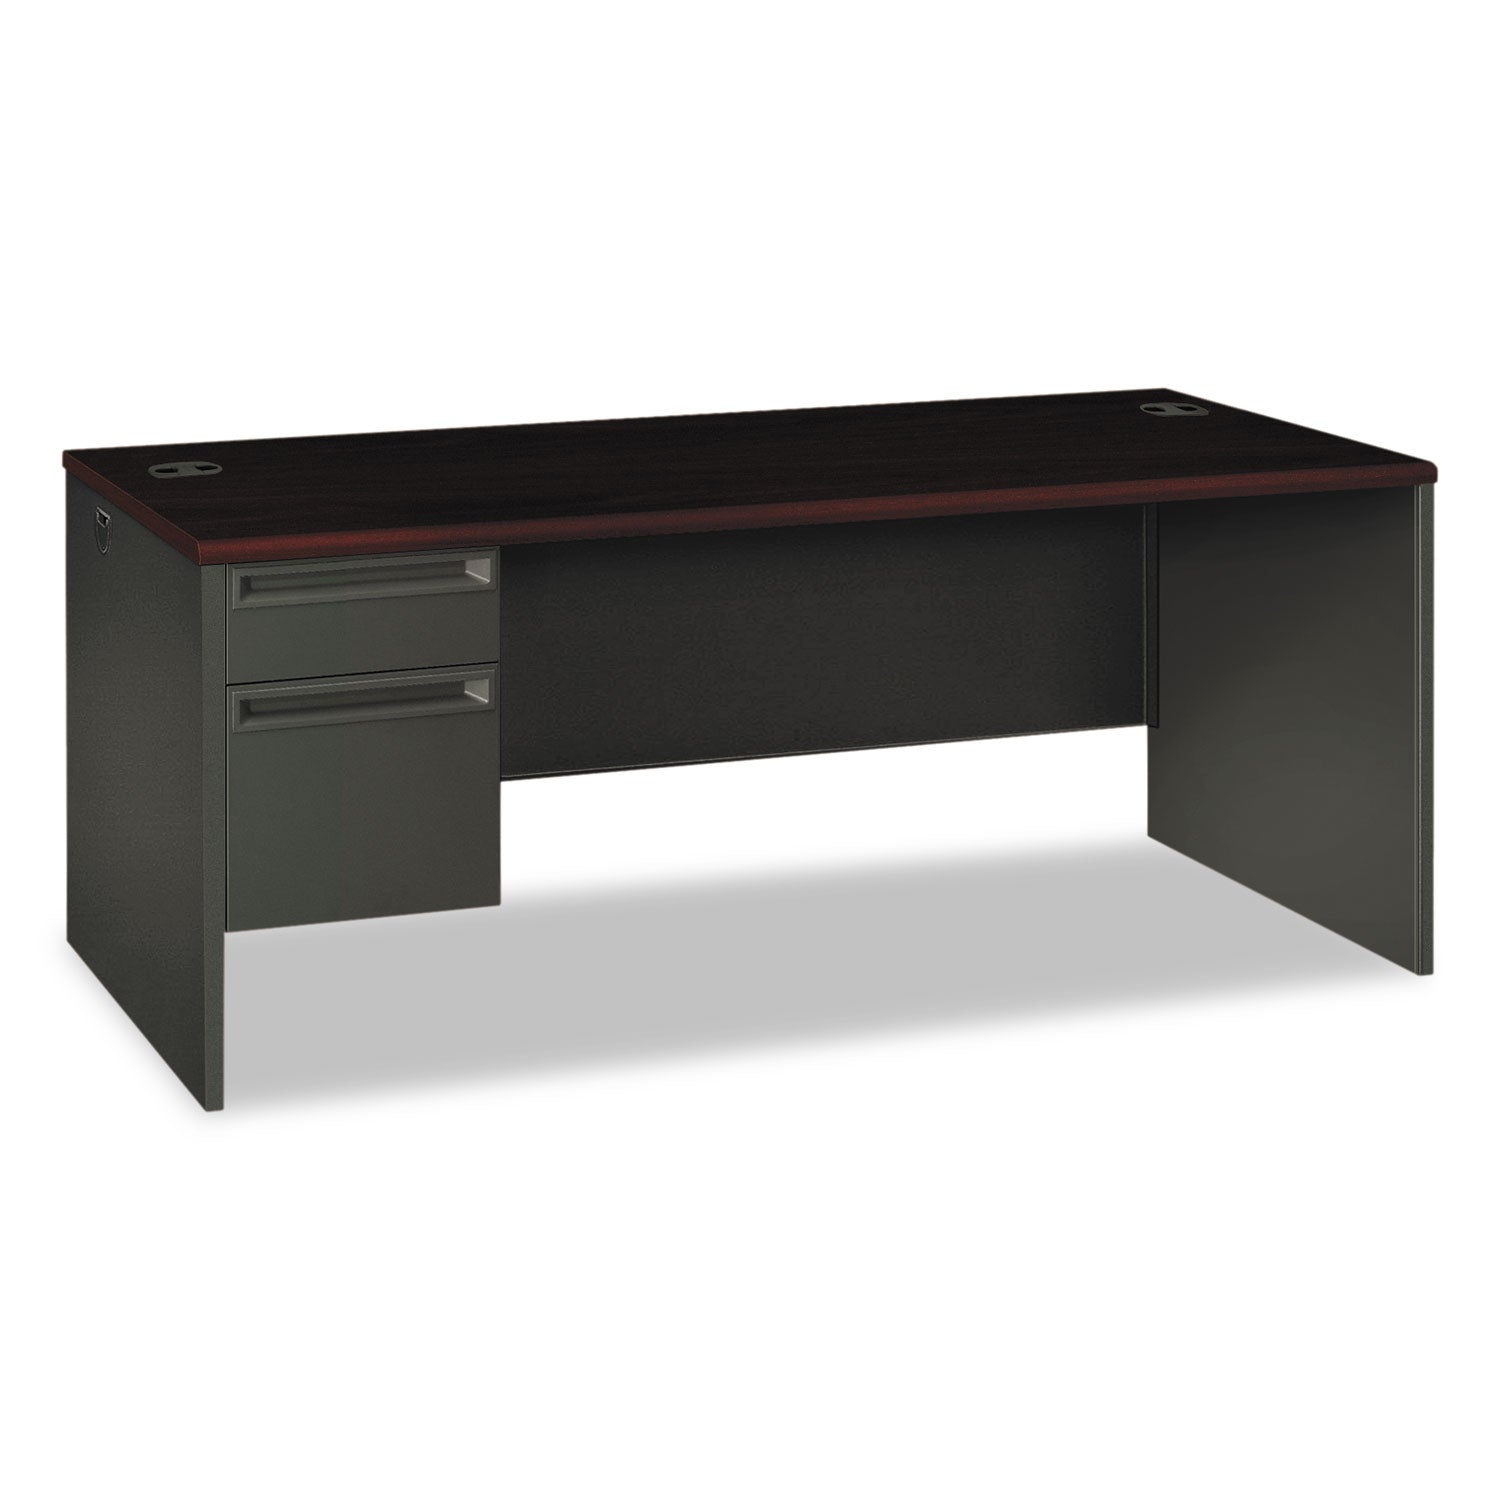 38000 Series Left Pedestal Desk, 72" x 36" x 29.5", Mahogany/Charcoal - 